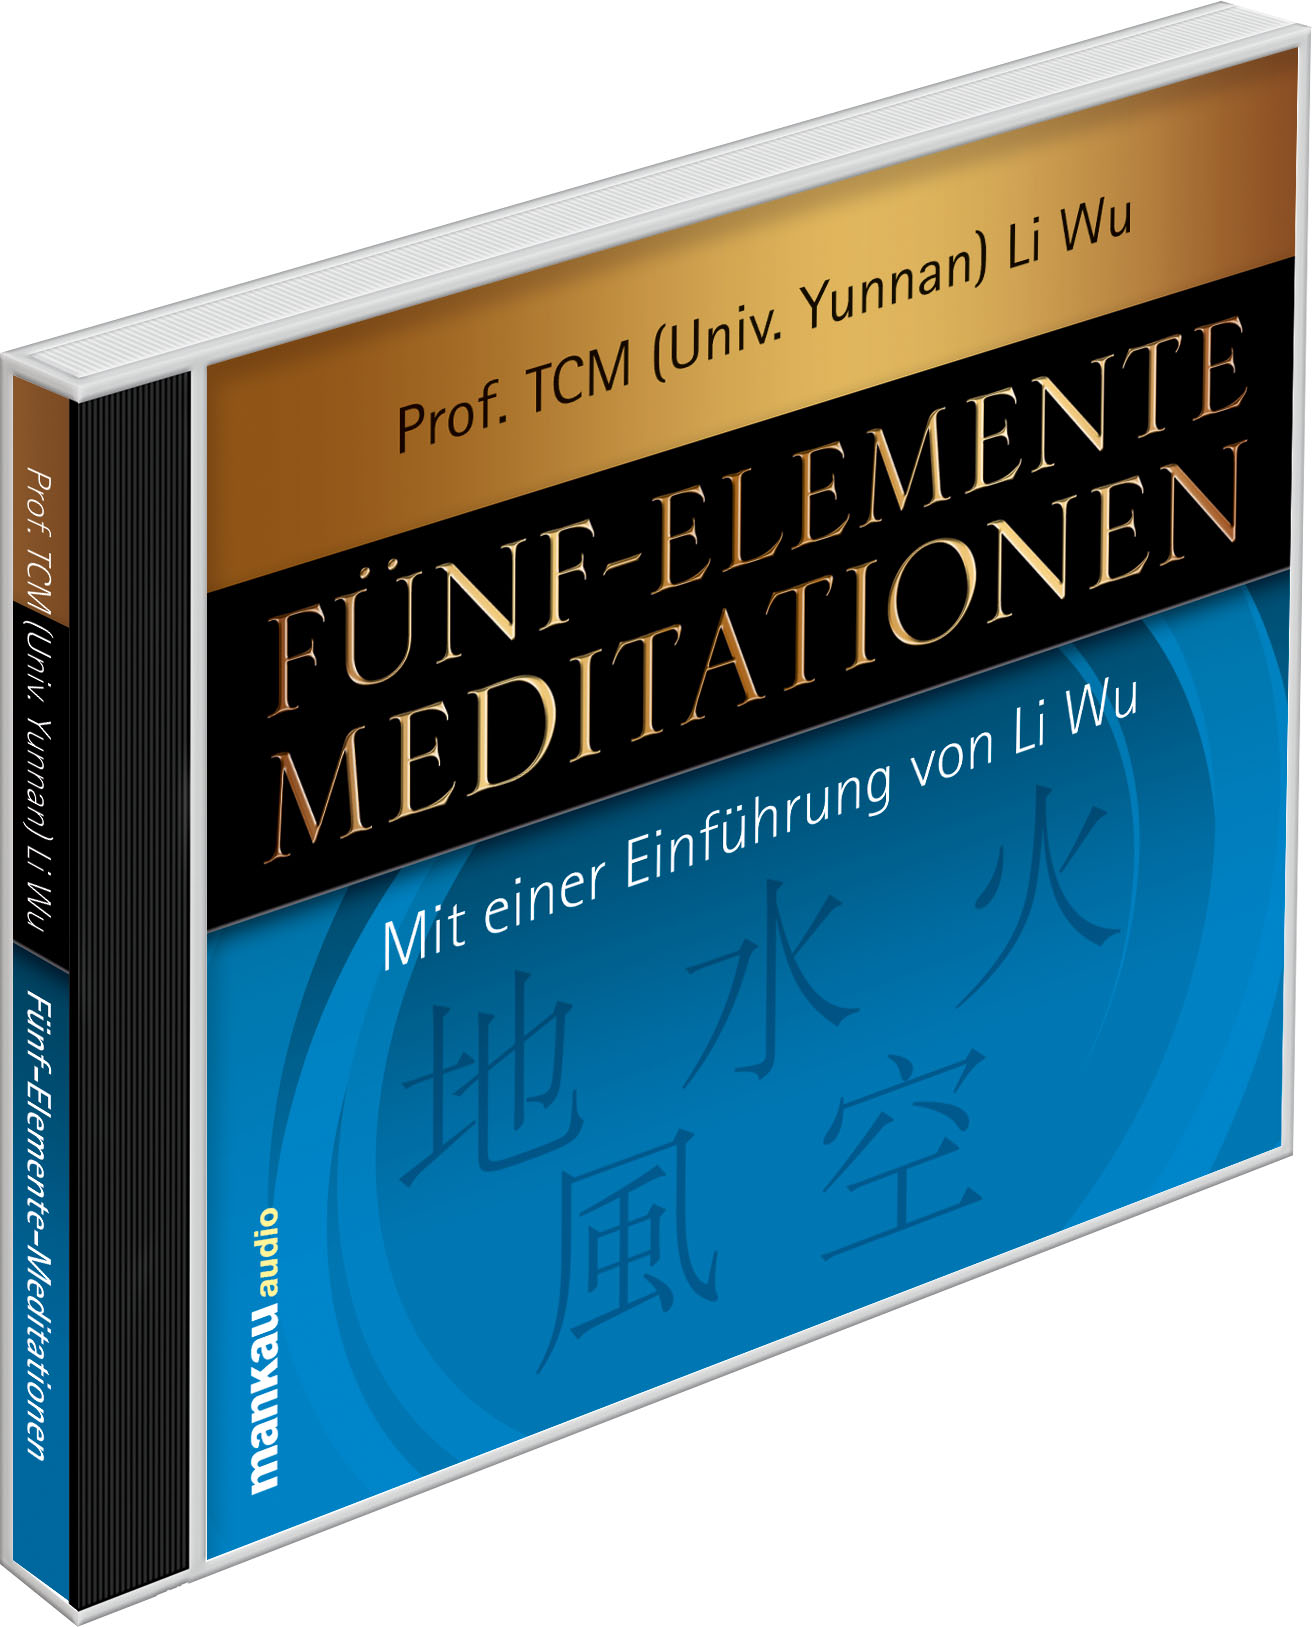 Fünf-Elemente-Meditationen (Li Wu, Prof. TCM Univ. Yunnan) (Audio-CD)